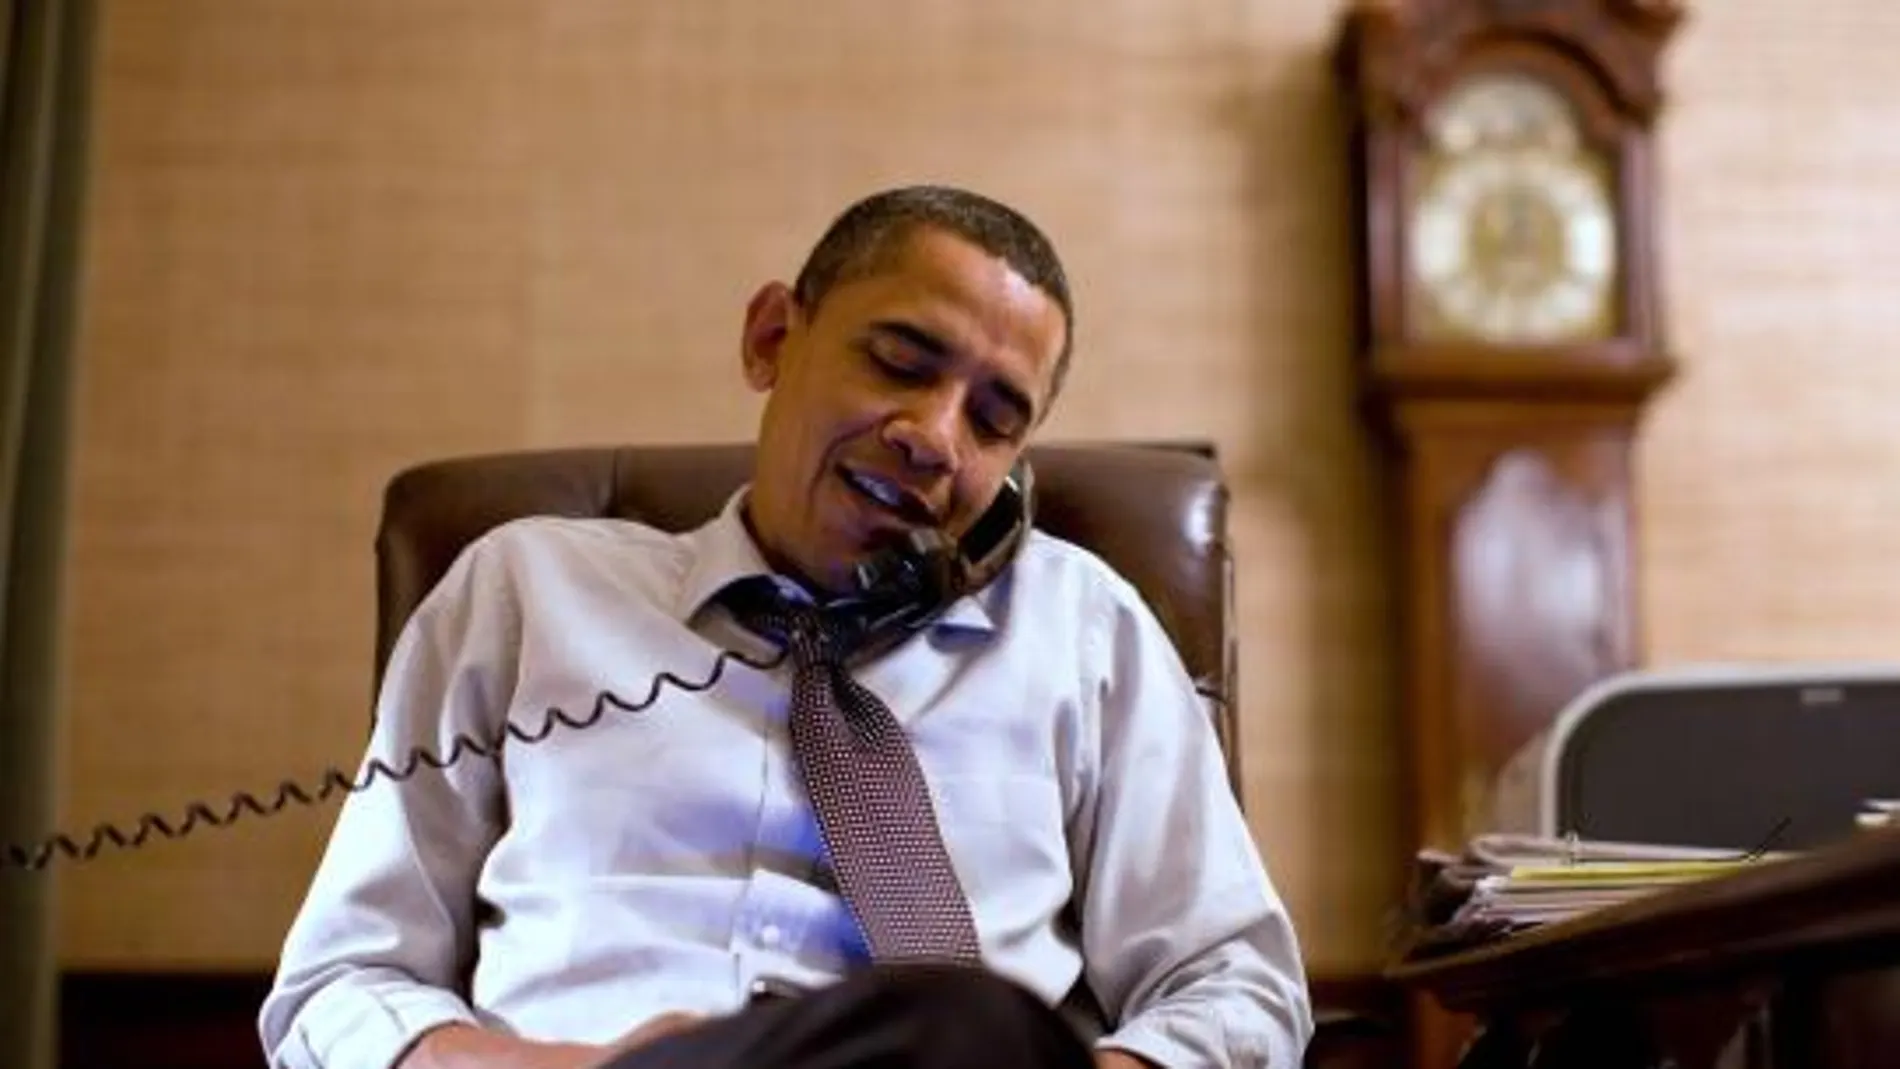 Obama llama por teléfono a Boehner para acordar un plan de trabajo conjunto